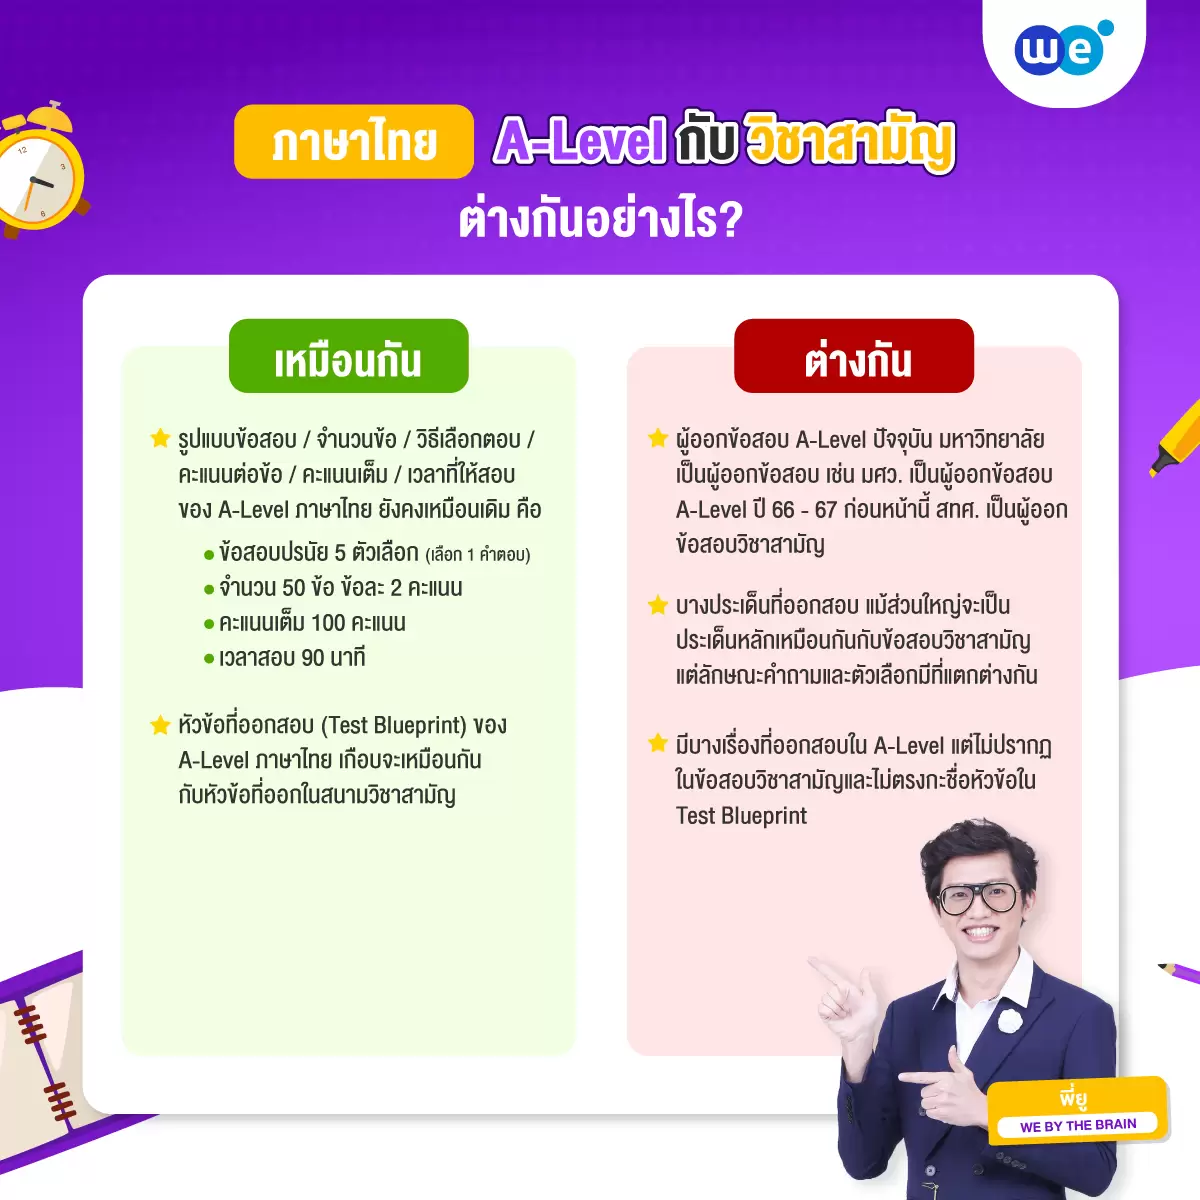 ข้อสอบวิชาสามัญ กับ A-Level ภาษาไทย เหมือนหรือต่างกันอย่างไร?